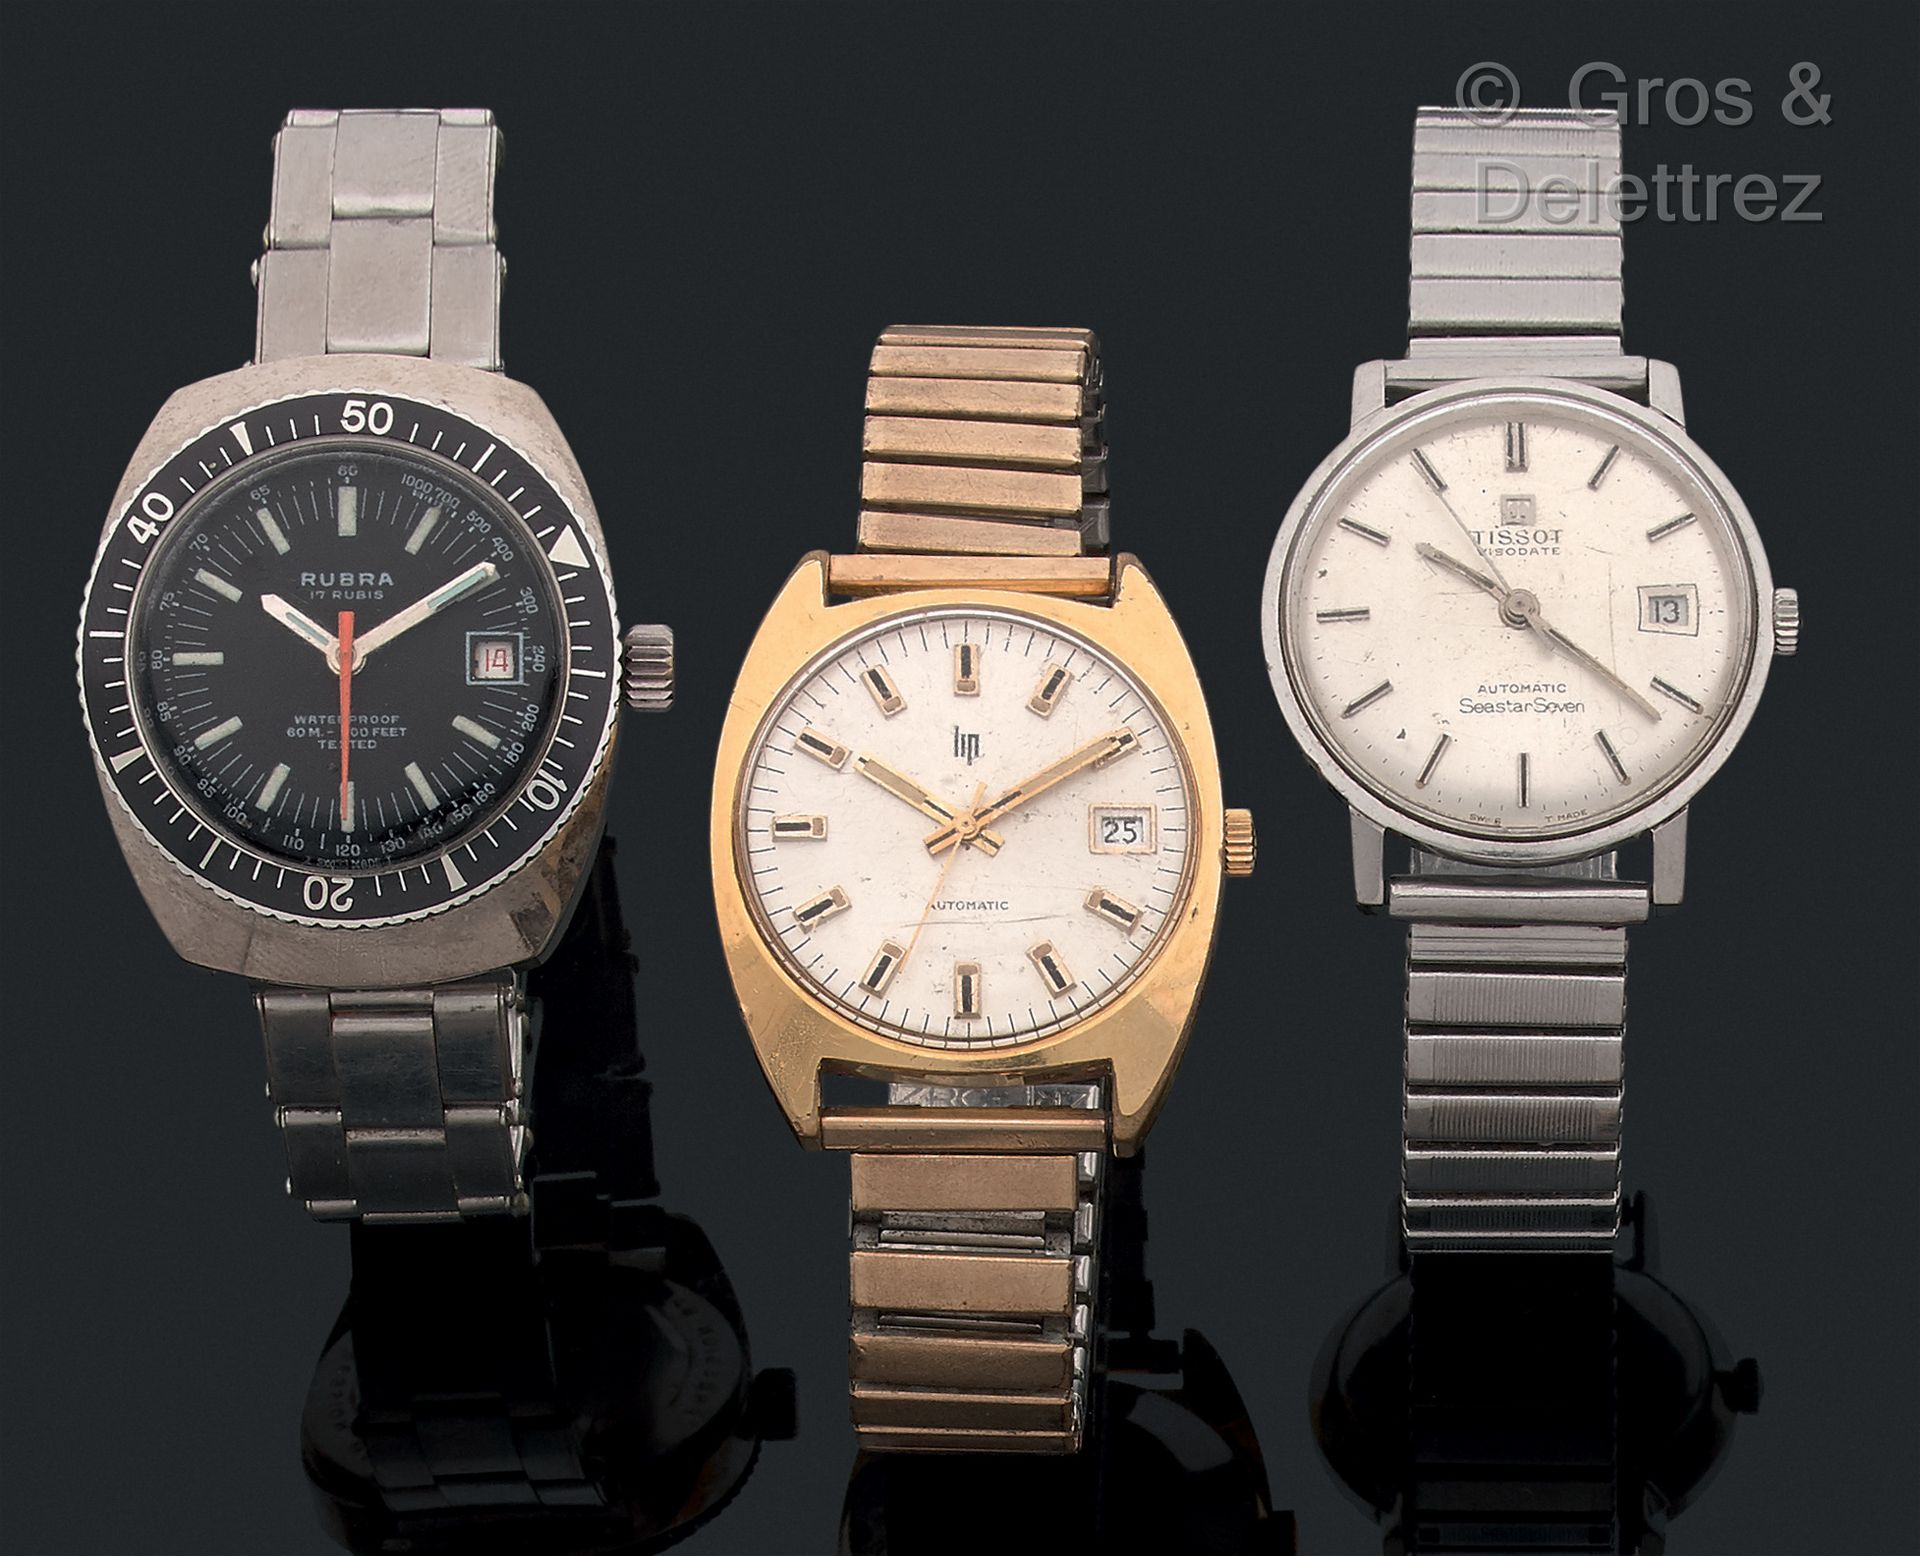 TISSOT LIP RUBRA 一批3只60年代的手表，其中一只是潜水表。

天梭表是自动的。欧米茄缺少上链器。按原样出售。